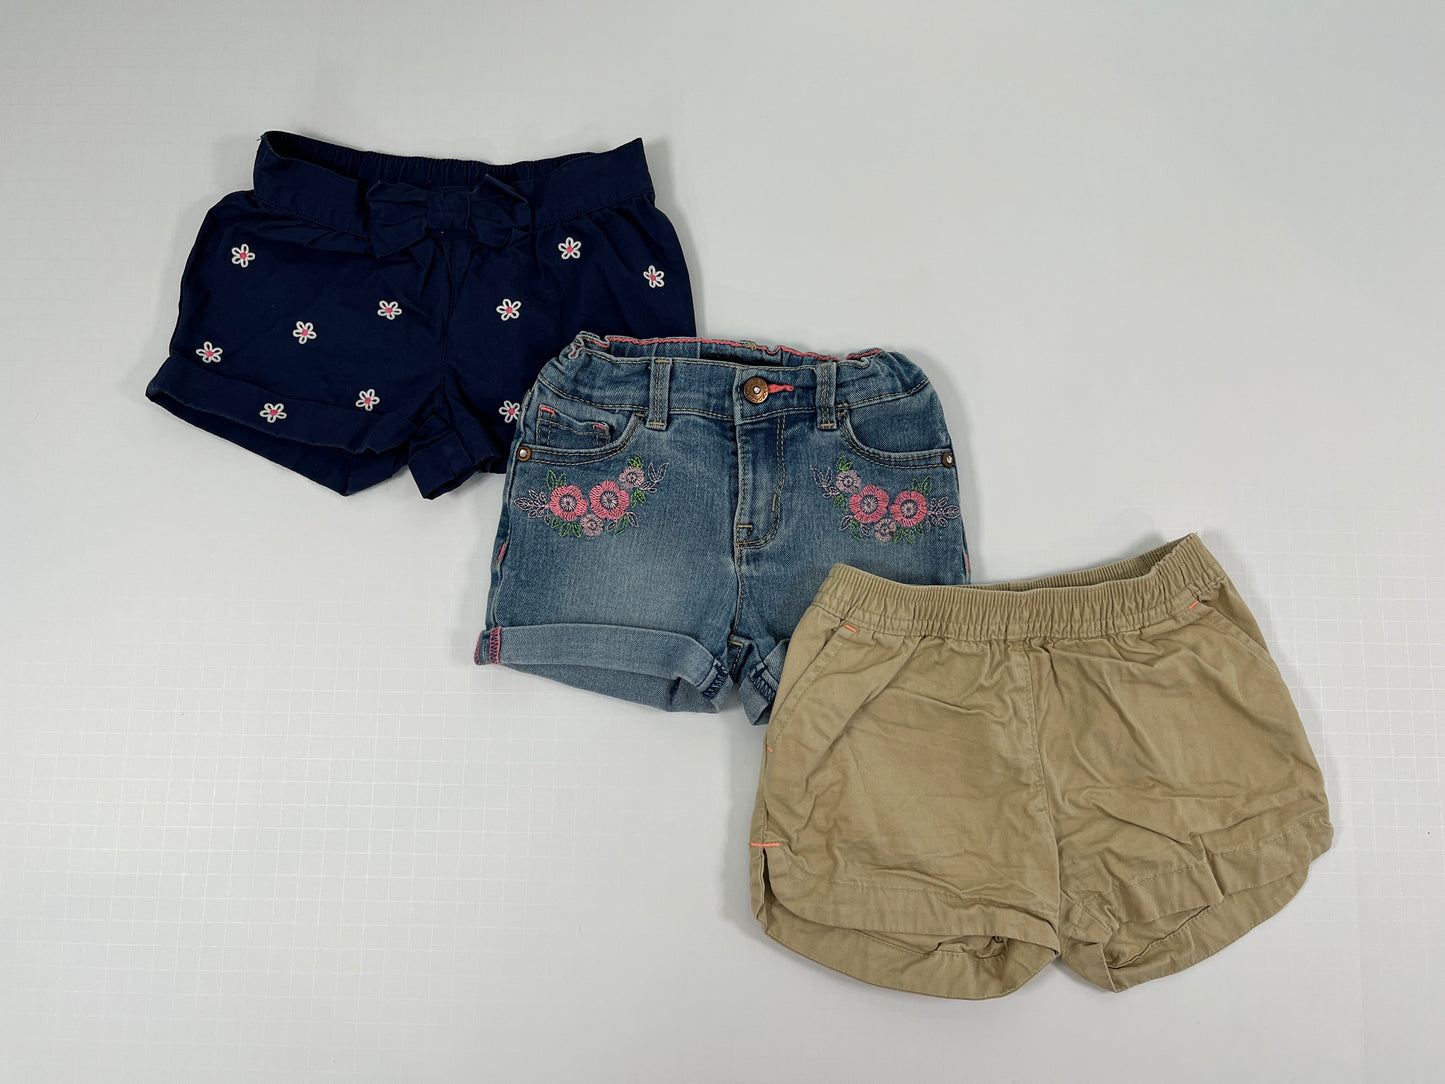 PPU 45242 3T girls mixed brand shorts bundle (3)